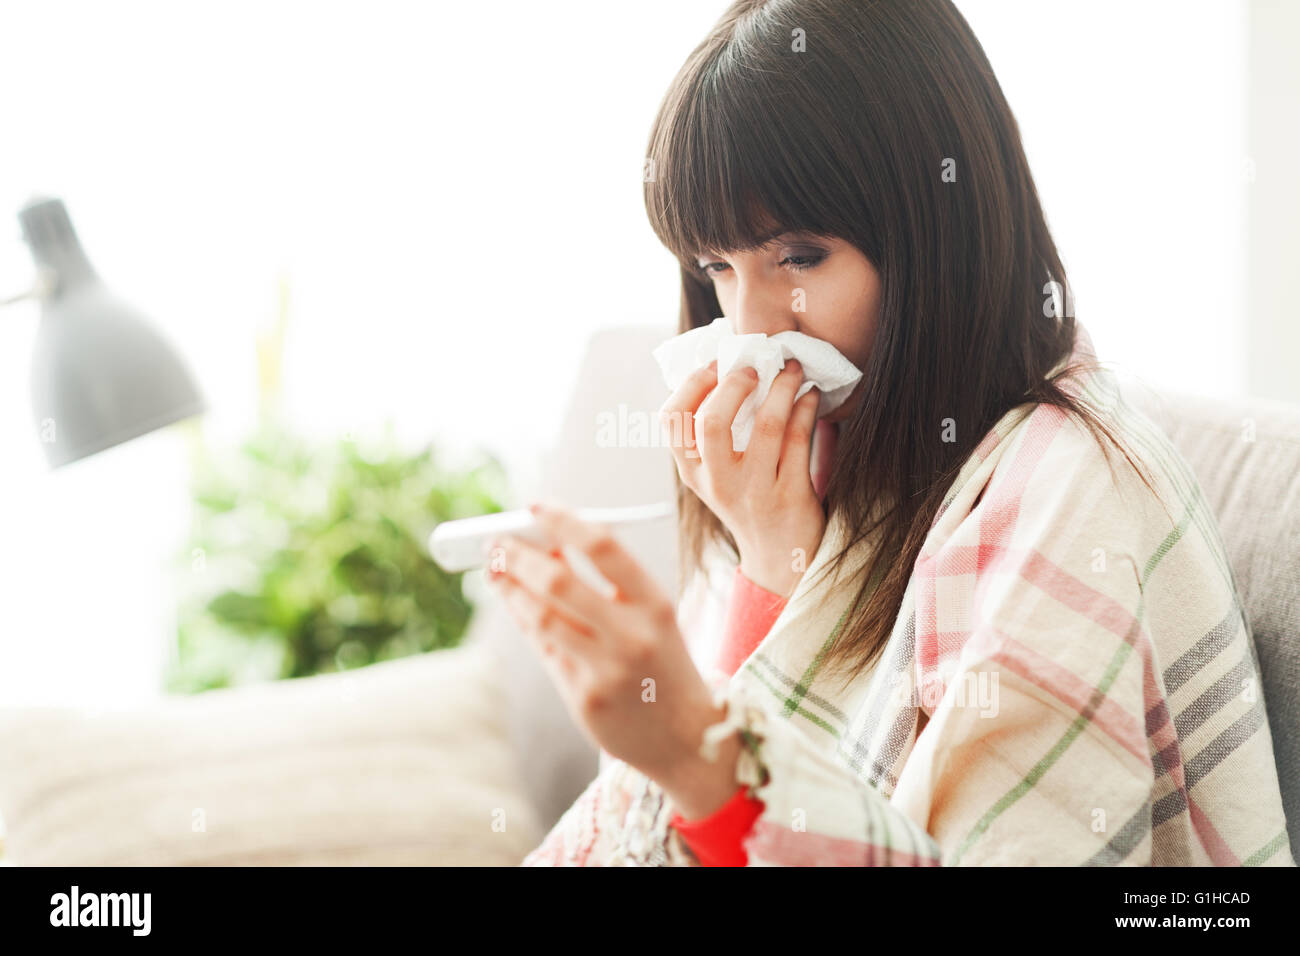 Junge Frau mit Erkältung und Grippe krank, sie ist ihre Nase und ihre Körpertemperatur messen Stockfoto